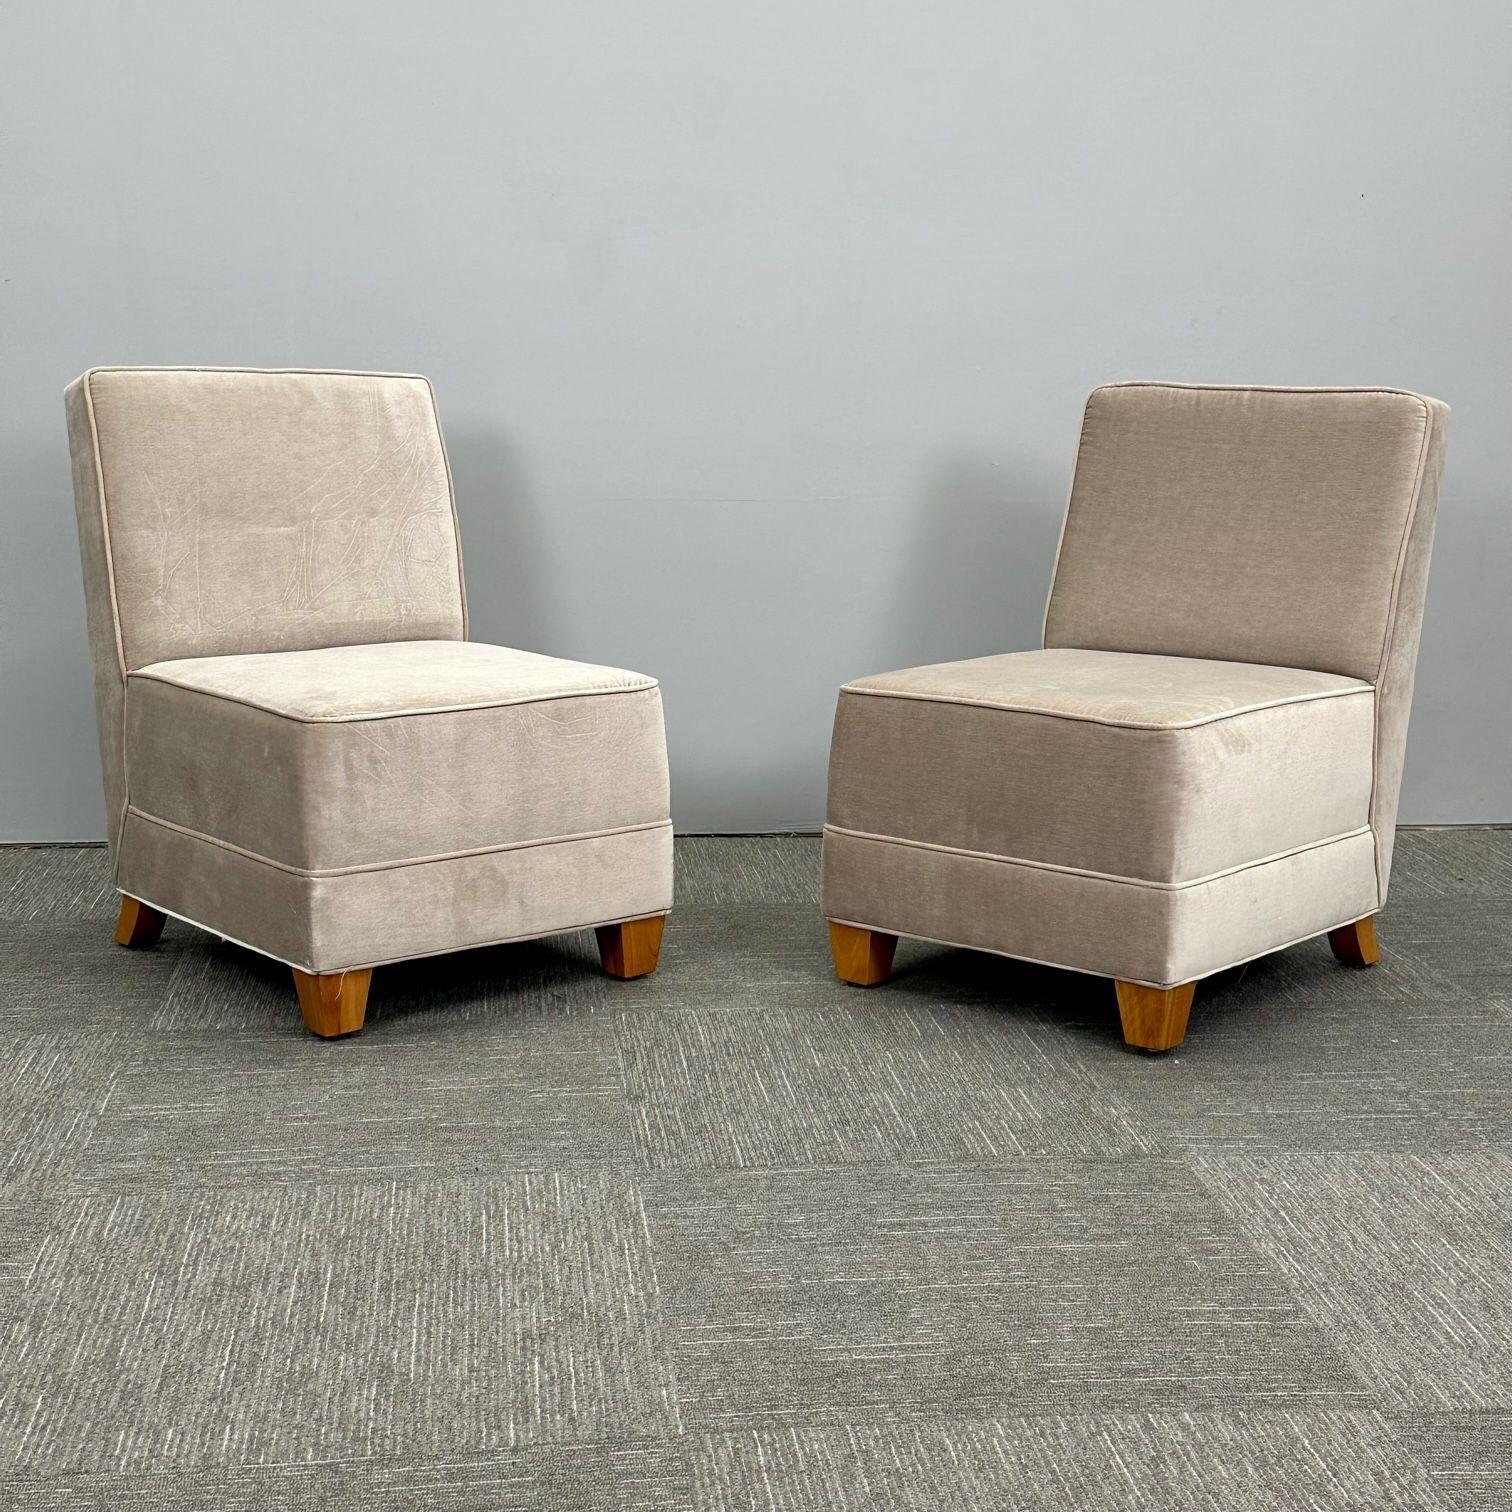 Paar Mid-Century Modern Jean-Michel Frank Style Lounge / Slipper Stühle, Mohair

Zwei klobige modernistische, von Jean-Michel Frank inspirierte, tief gepolsterte Boudoir- oder Beistellstühle. Jedes wird von einem hoch sitzenden Kissen und einer